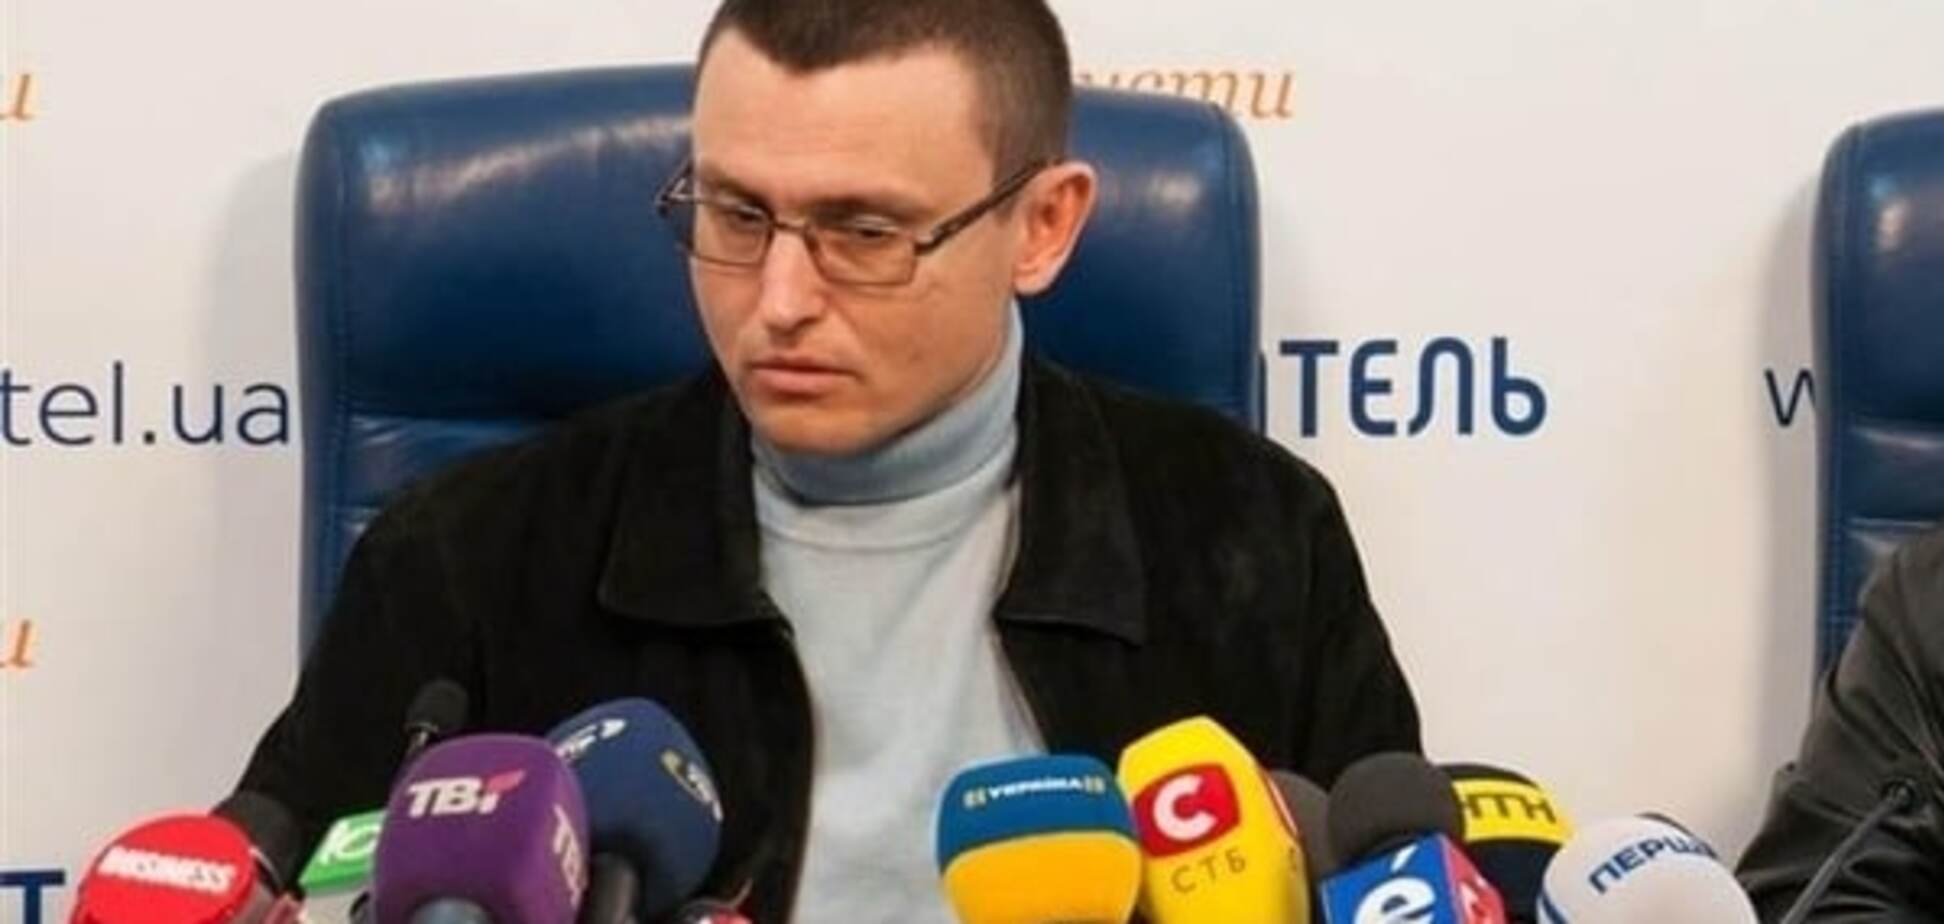 Диверсия на складе боеприпасов: Селезнев рассказал о подробностях инцидента